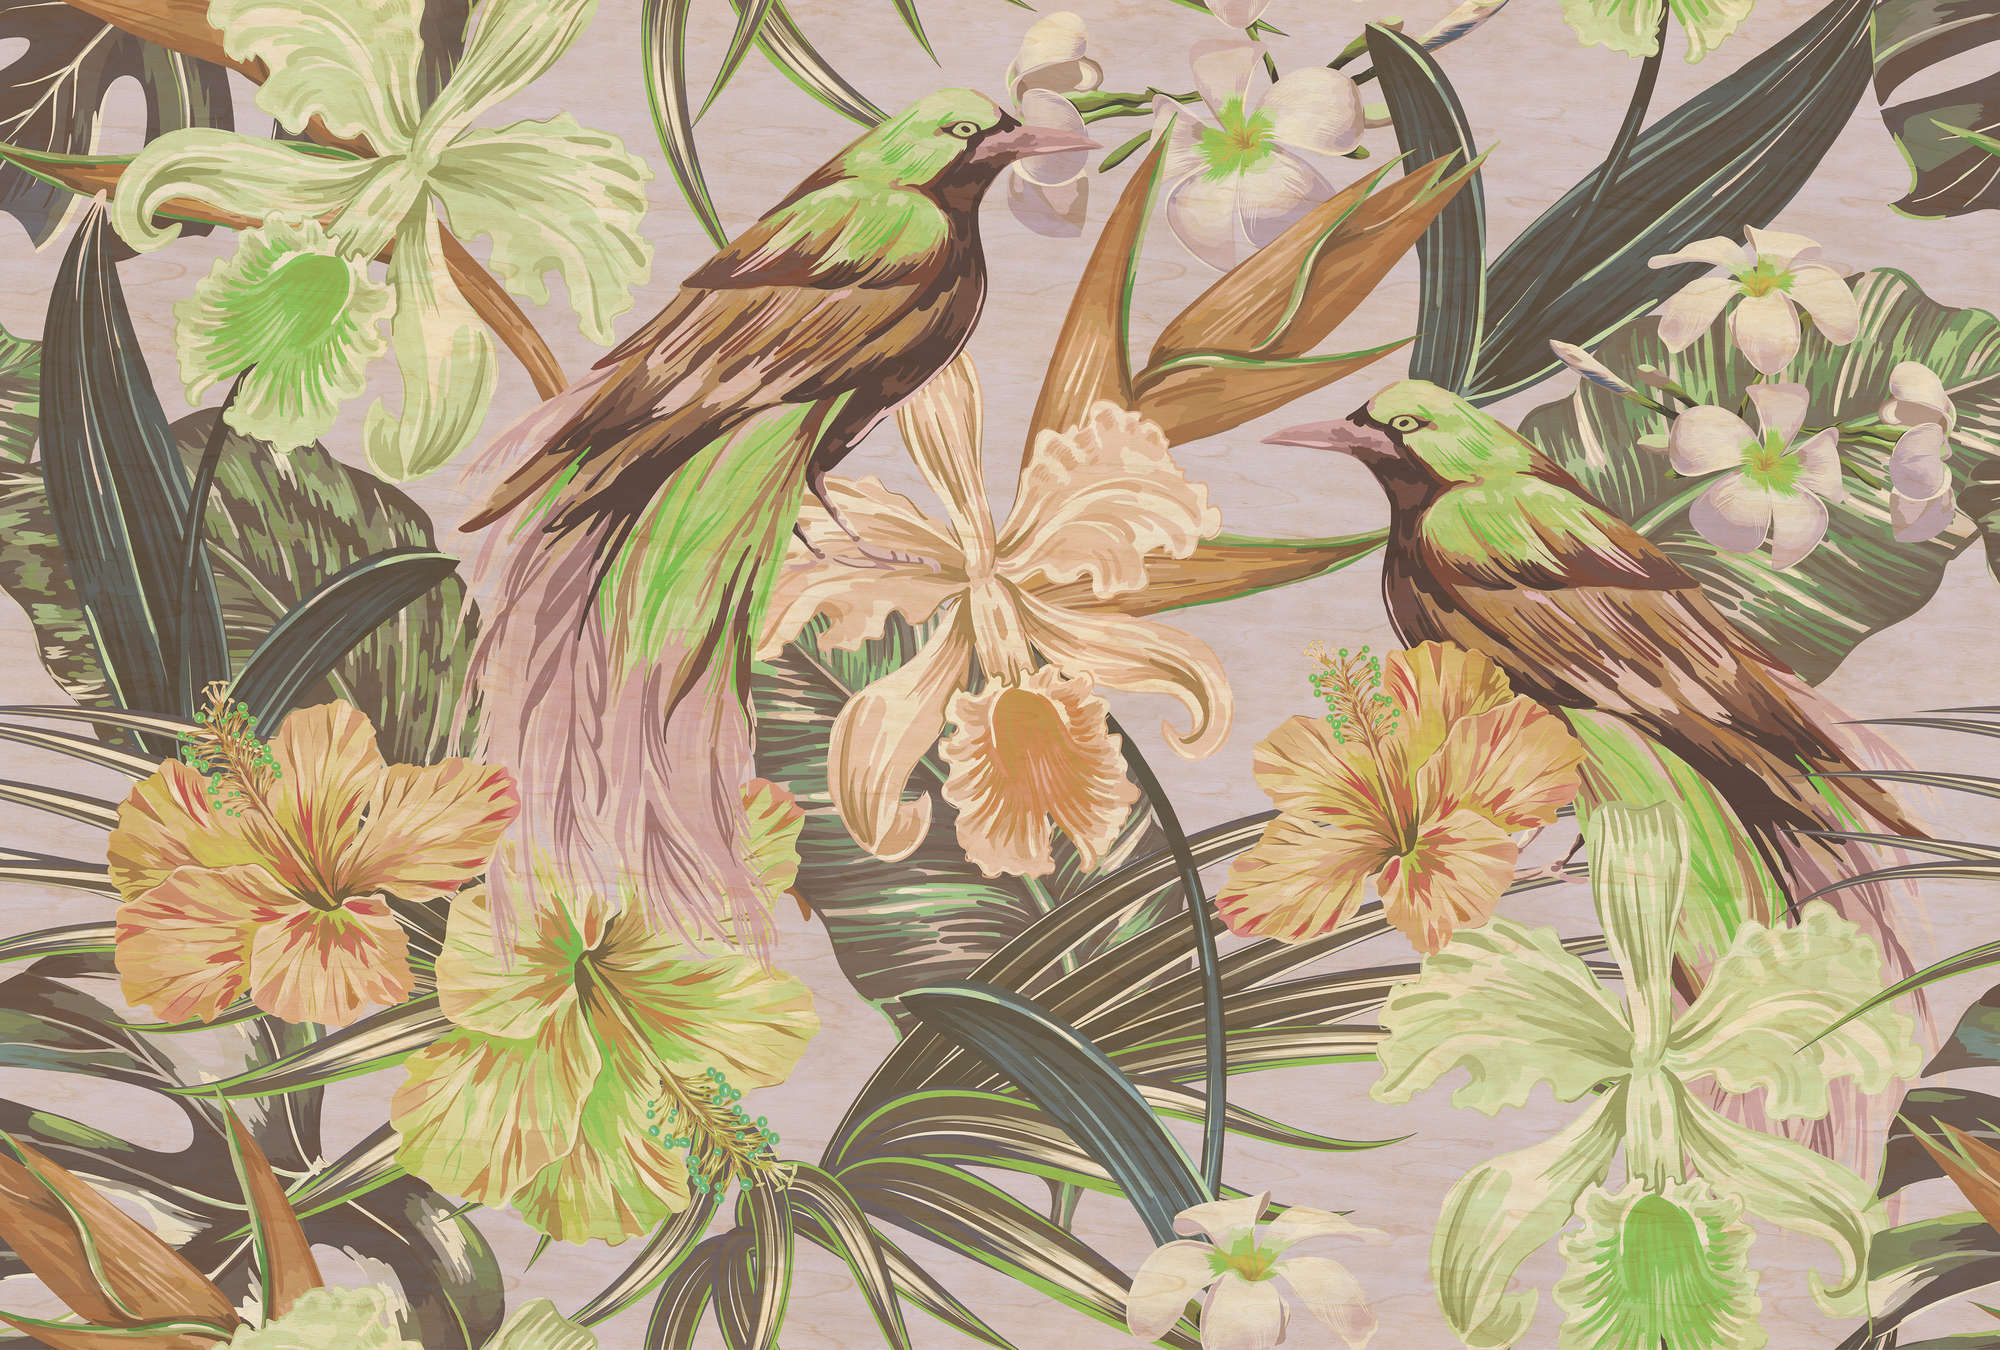             Exotic birds 2 - Papier peint oiseaux exotiques & plantes - texture grattée - beige, vert | texture intissé
        